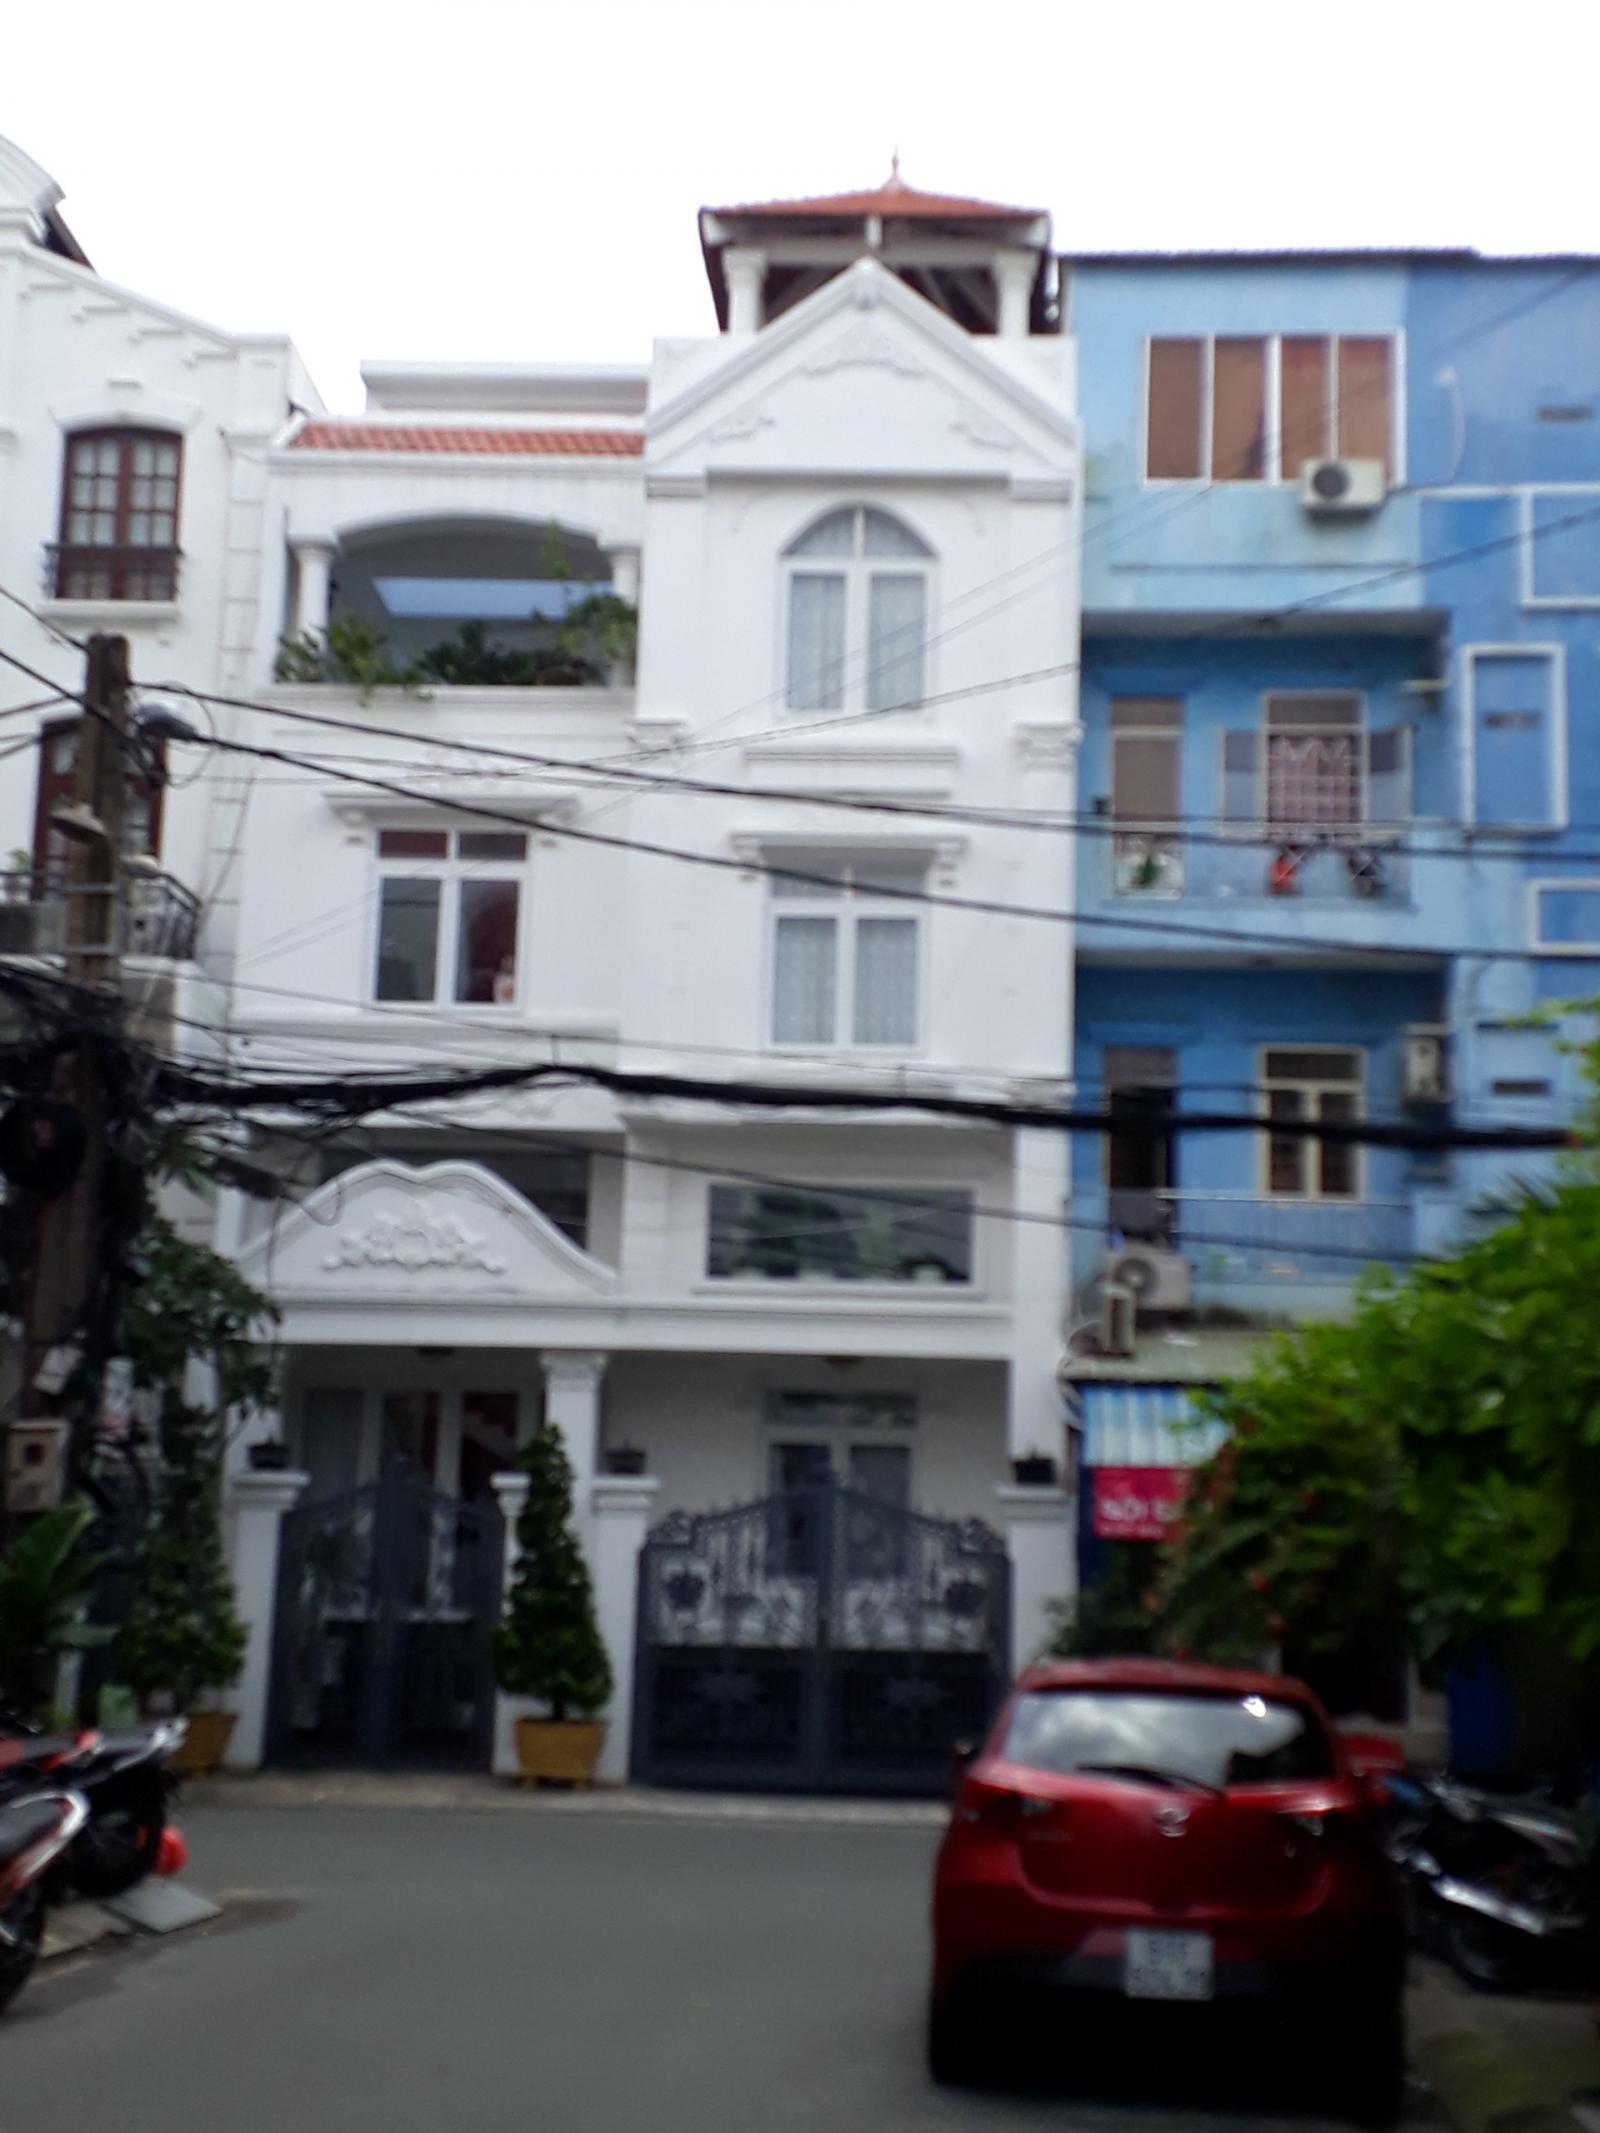 Hot! Bán nhà MT Nguyễn Trãi - Nguyễn Biểu Quận 5 duy nhất 1 căn giá 12.5 tỷ